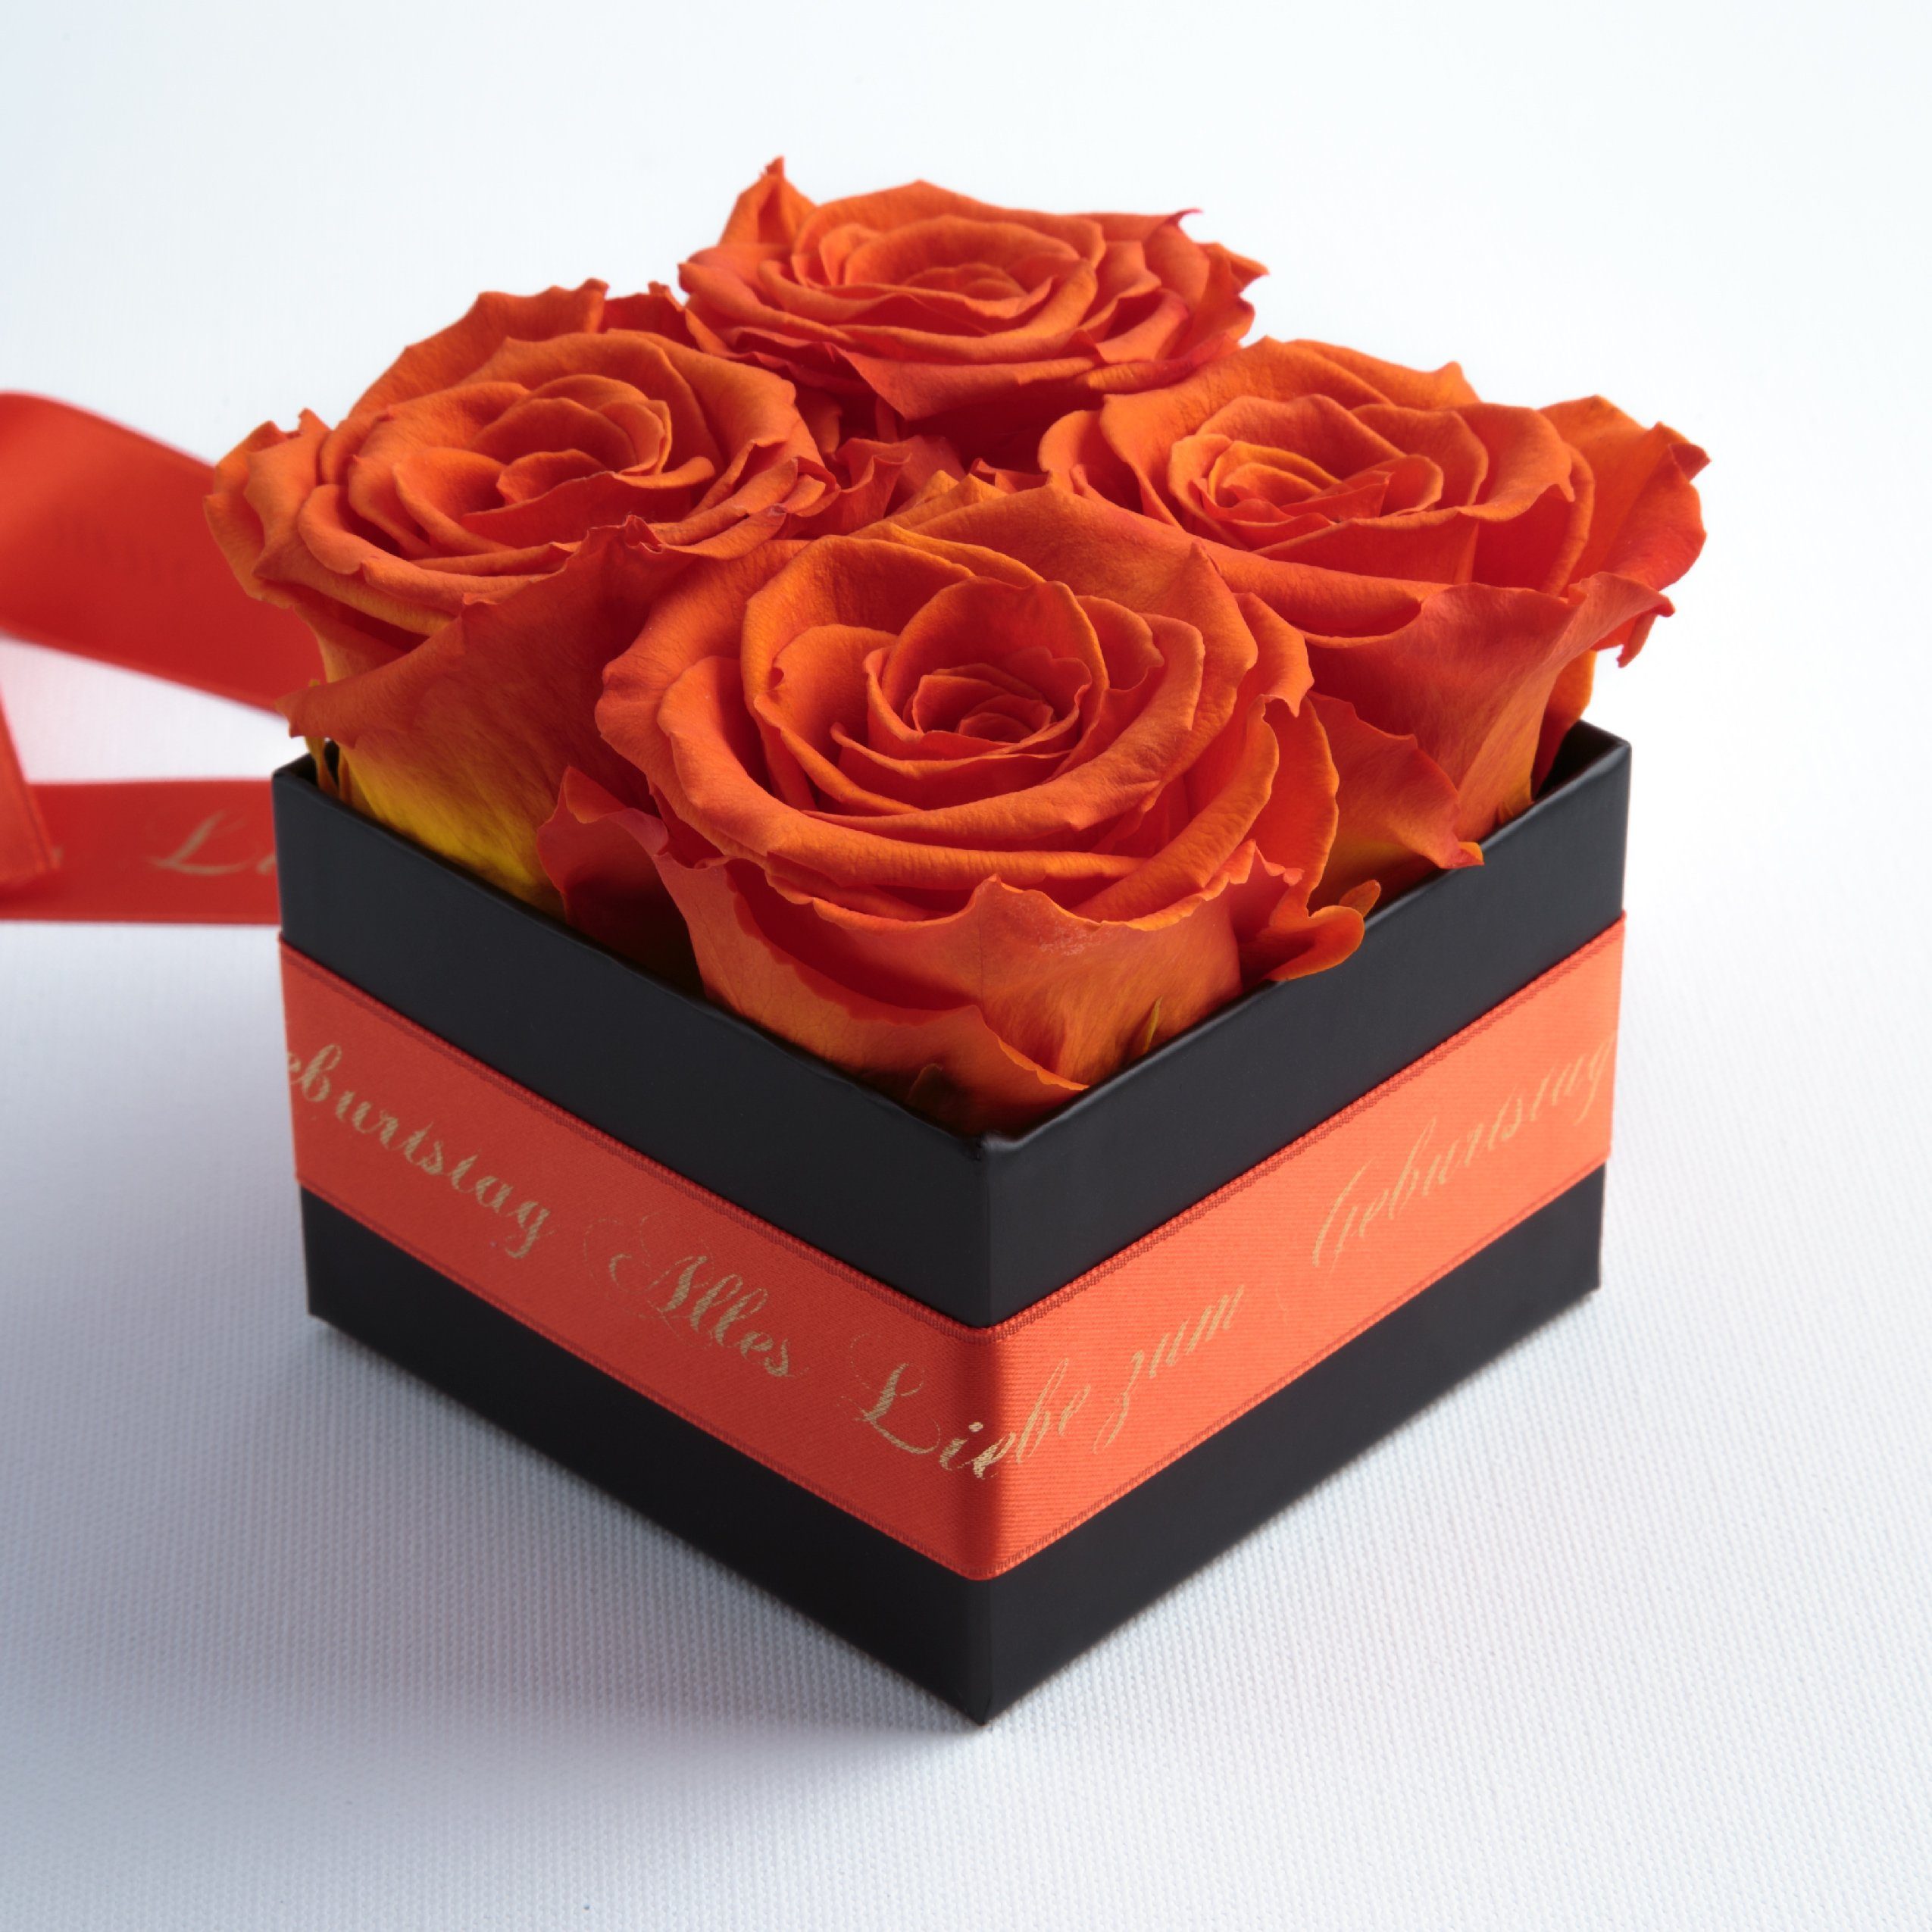 Geschenk Geburtstag Alles Orange Liebe zum konservierte für echte Heidelberg Rosen St), (1 Frauen SCHULZ ROSEMARIE Echte Rosen Rosenbox Dekoobjekt